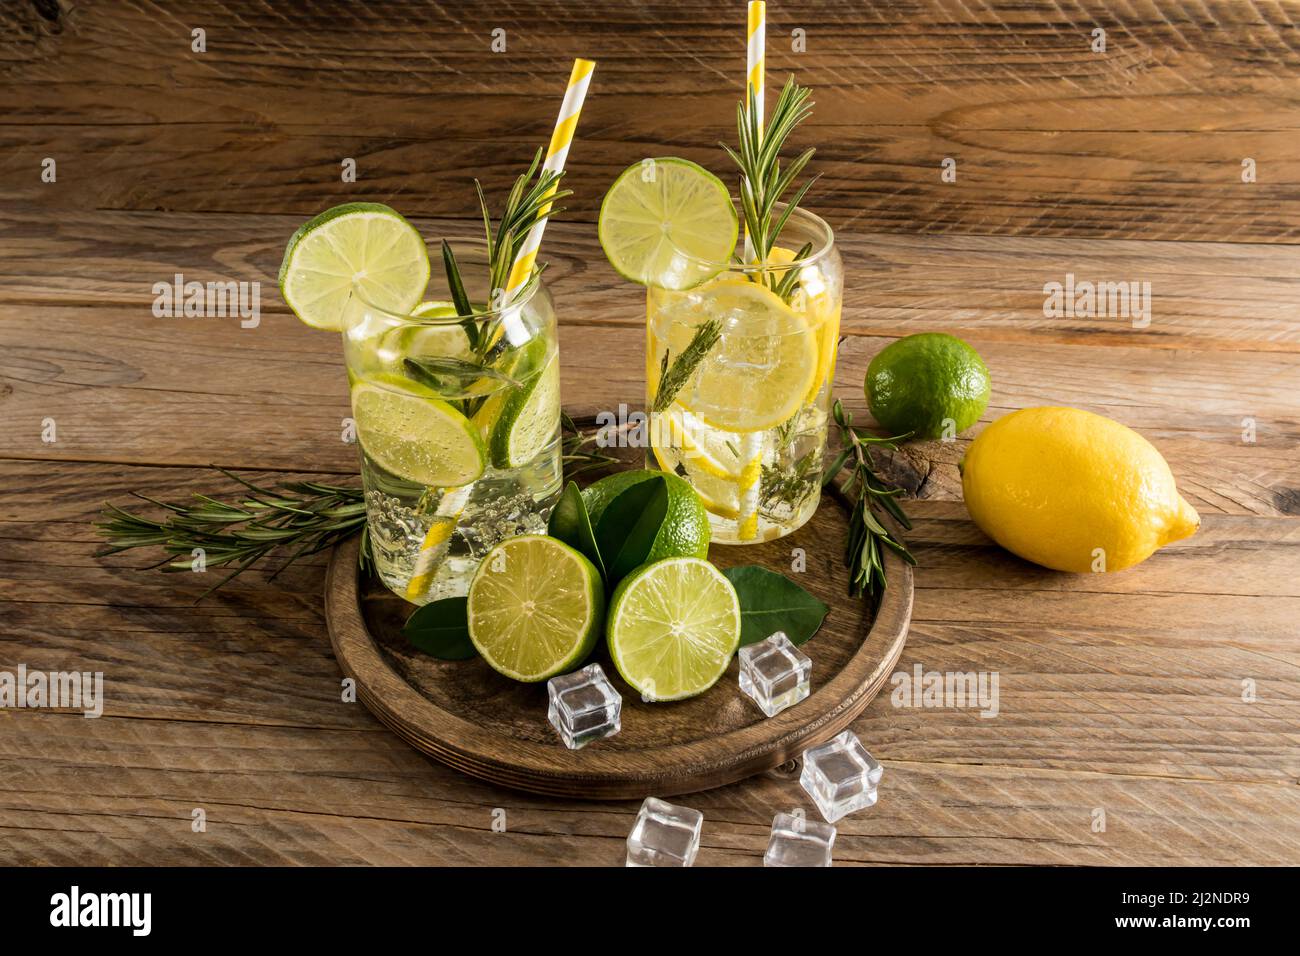 deux verres d'eau vitaminée au citron et à la chaux, des brins de romarin sur un plateau rond en bois et une table de village. glaçons pour refroidir Banque D'Images